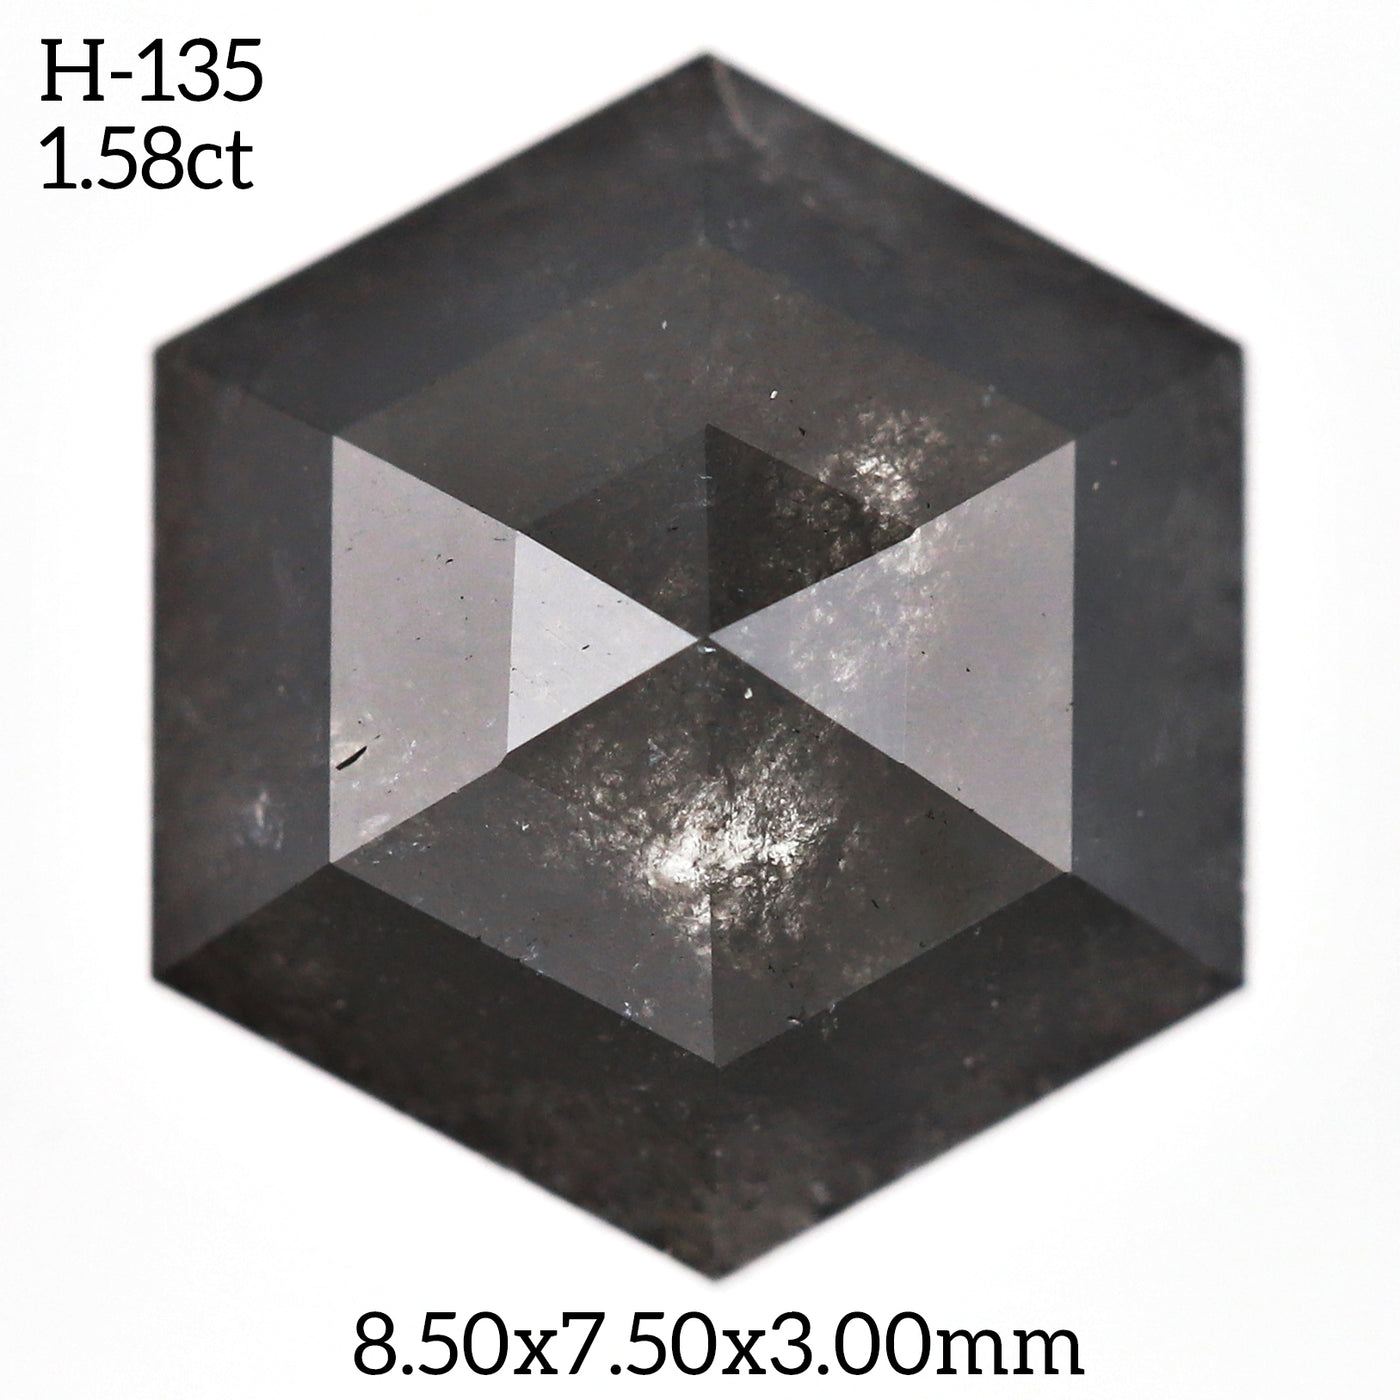 H135 - Salt and pepper hexagon diamond